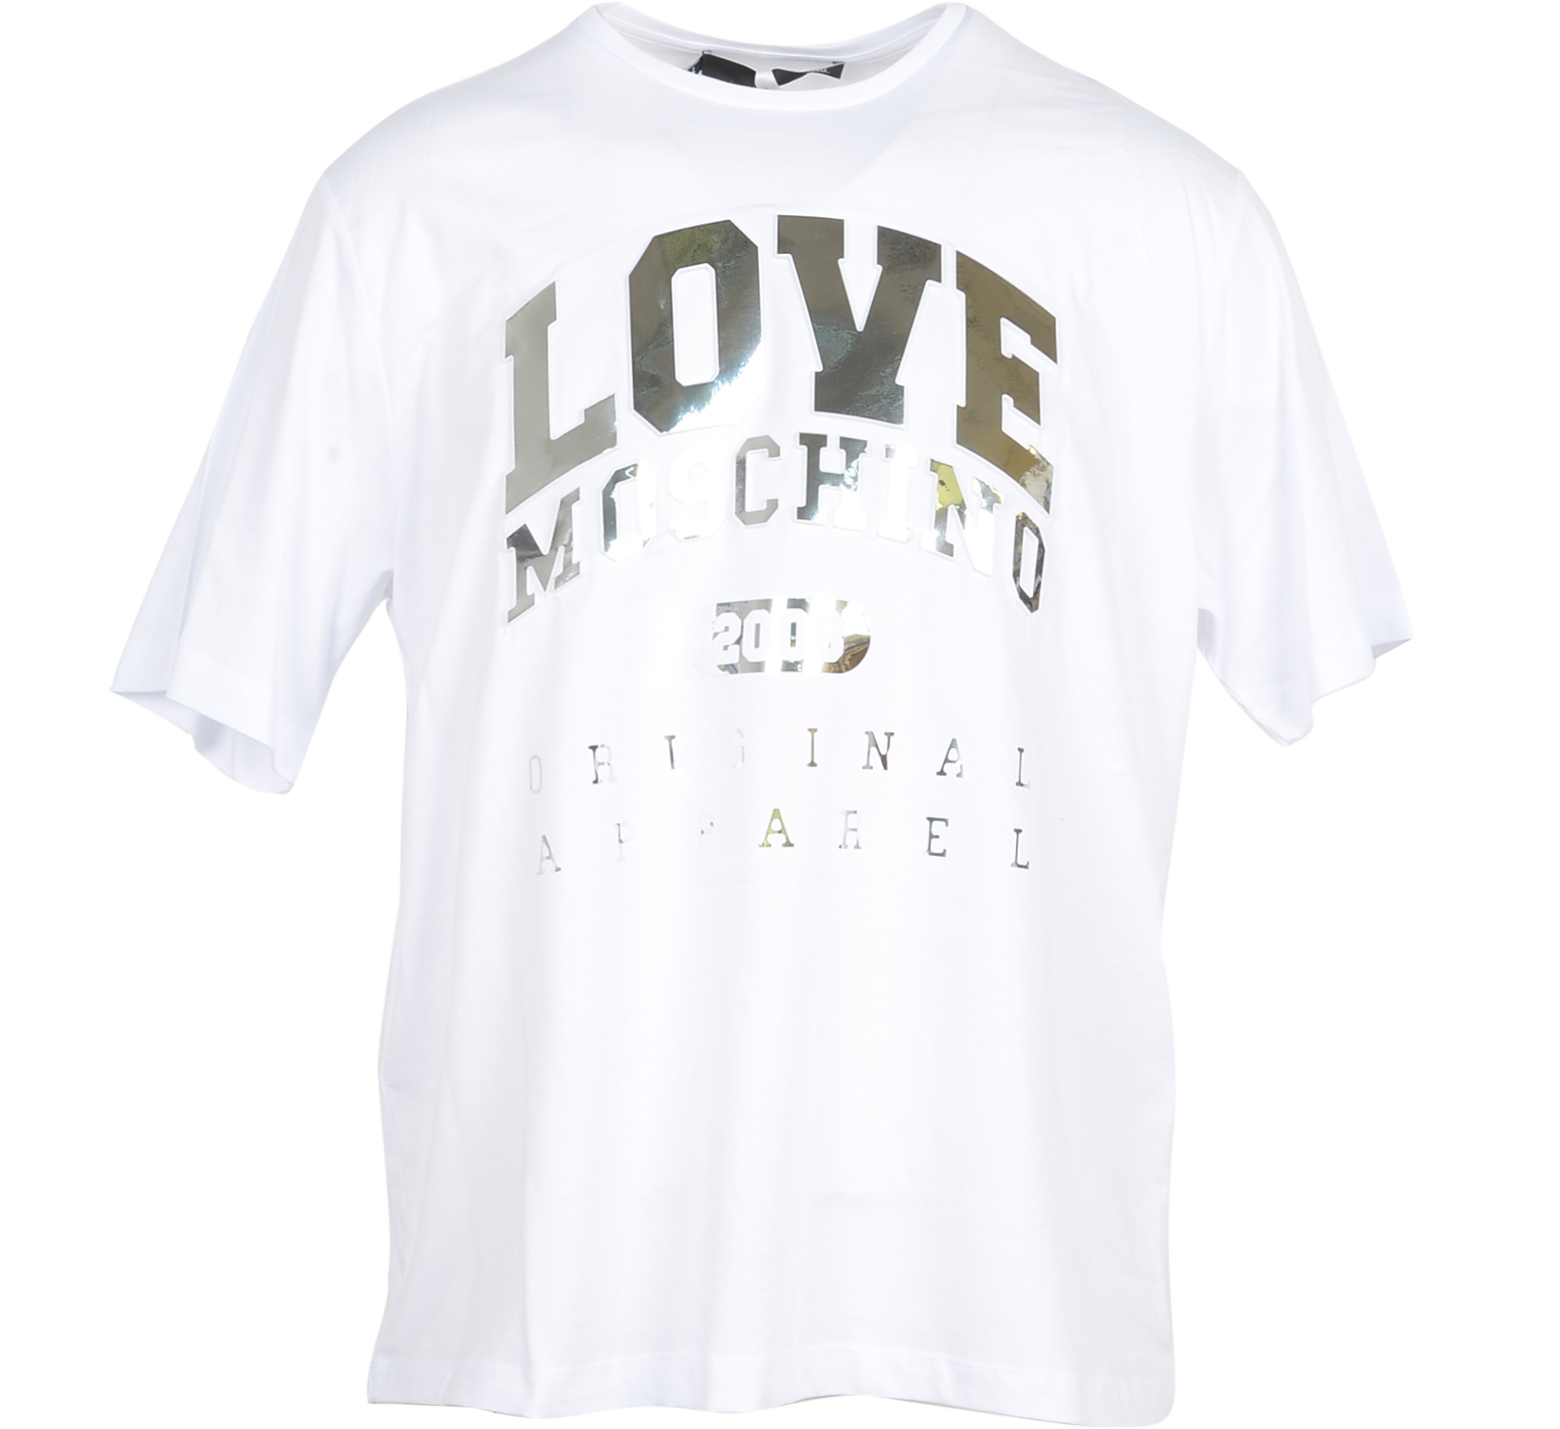 white and gold moschino t-shirt